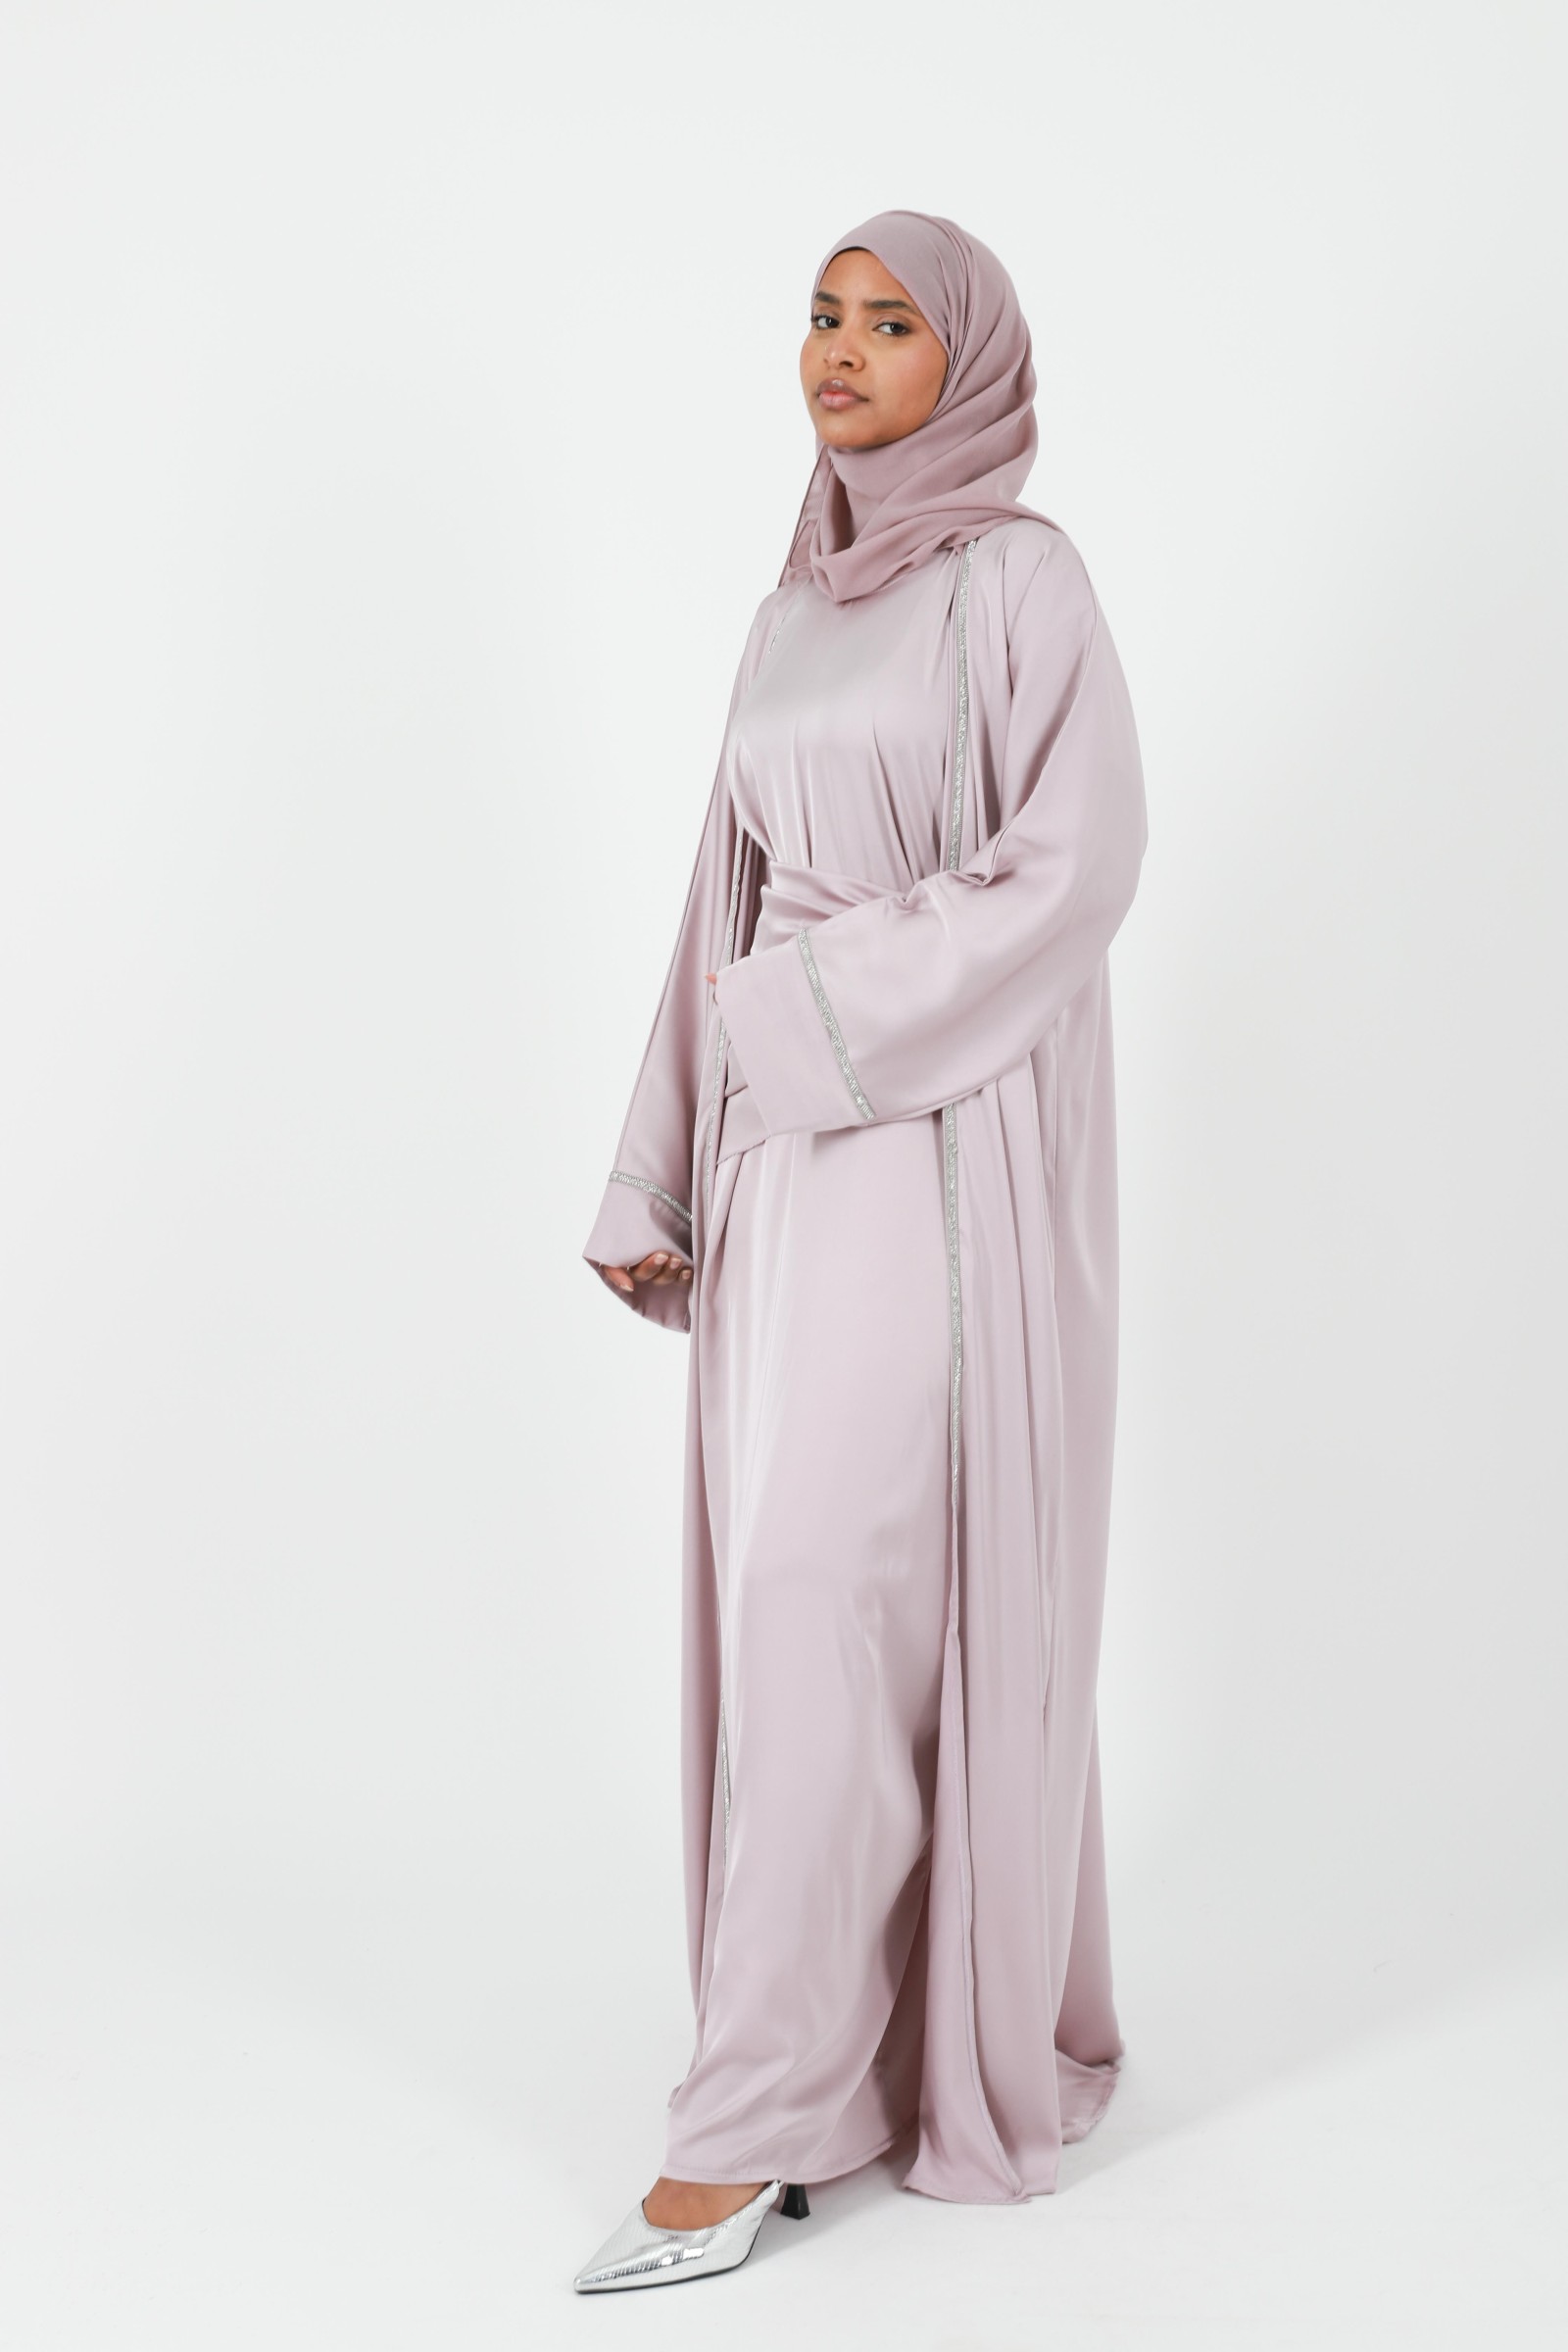 Abaya dubai  tenue de fête pour femme musulmane modeste et élégante